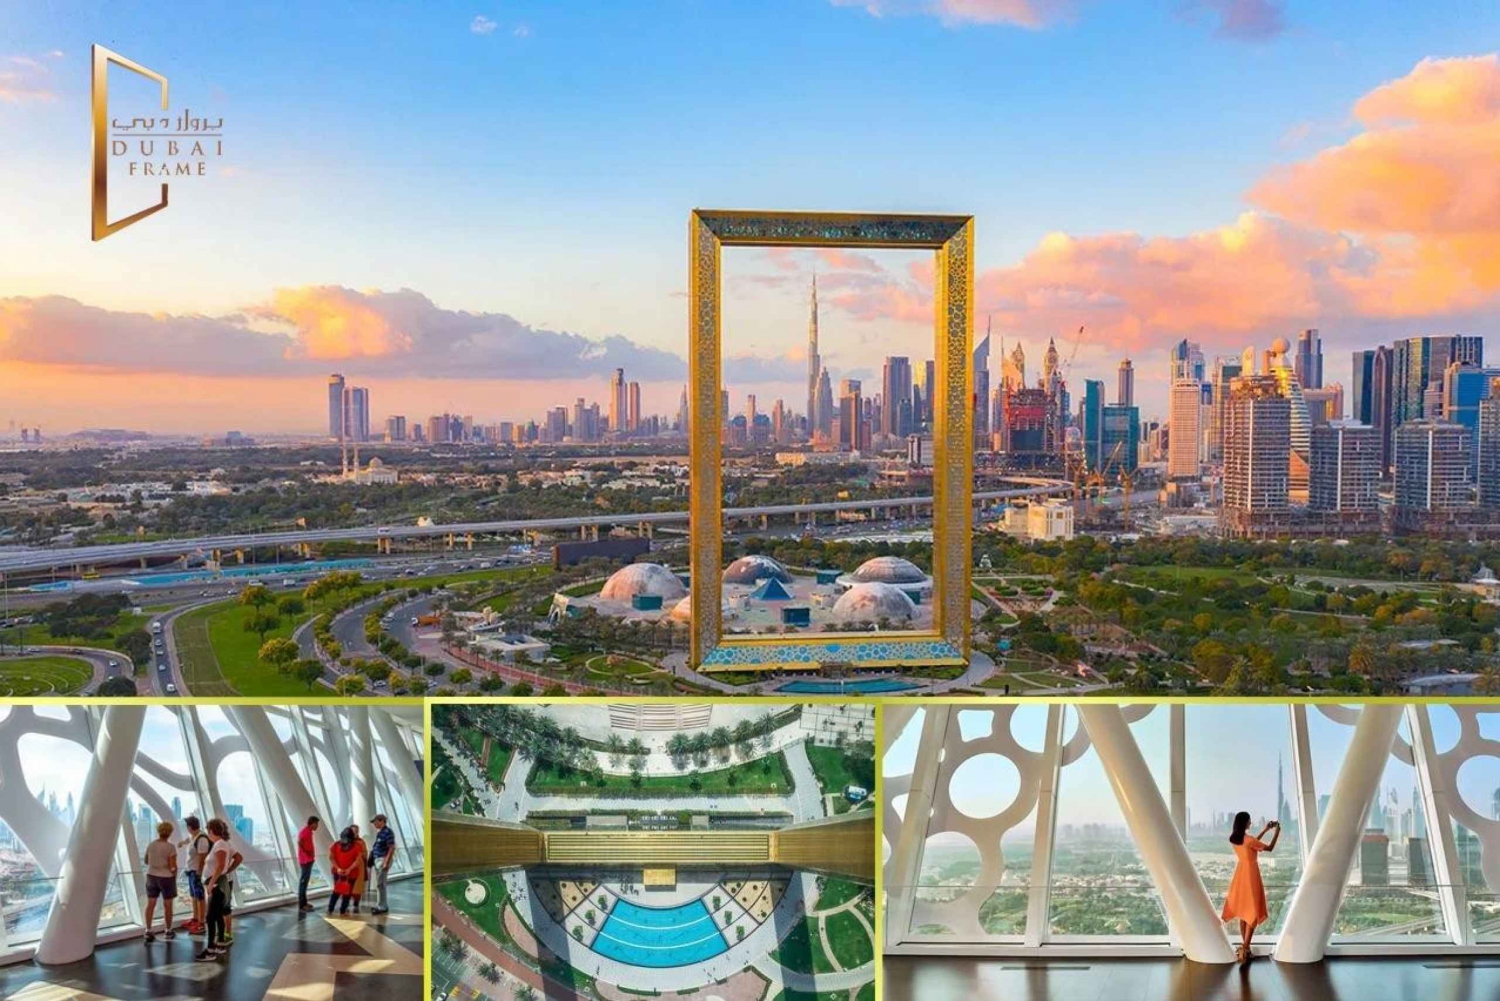 Stadstur i Dubai med alla turistattraktioner